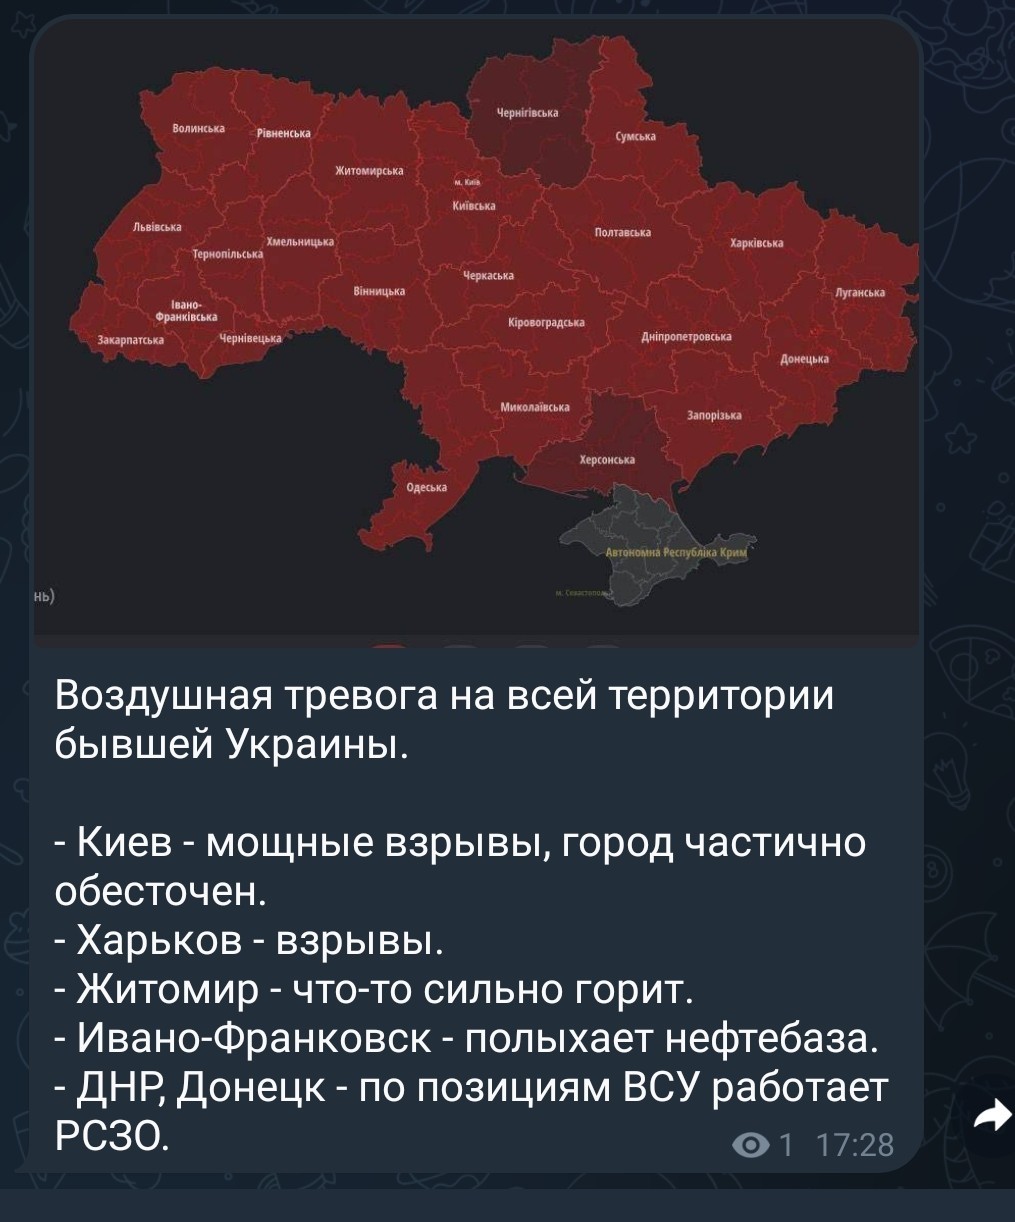 Карта тревог в украине сейчас. Воздушная тревога на Украине. Воздушная тревога на всей территории Украины. По всей территории Украины объявлена воздушная тревога. Карта воздушных тревог в Украине.